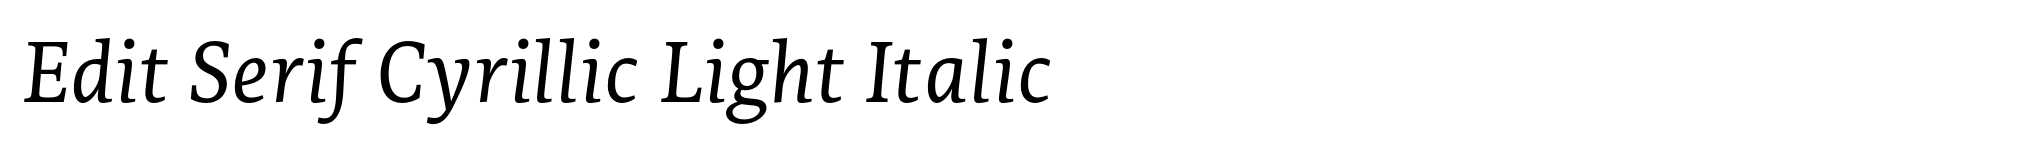 Edit Serif Cyrillic Light Italic image